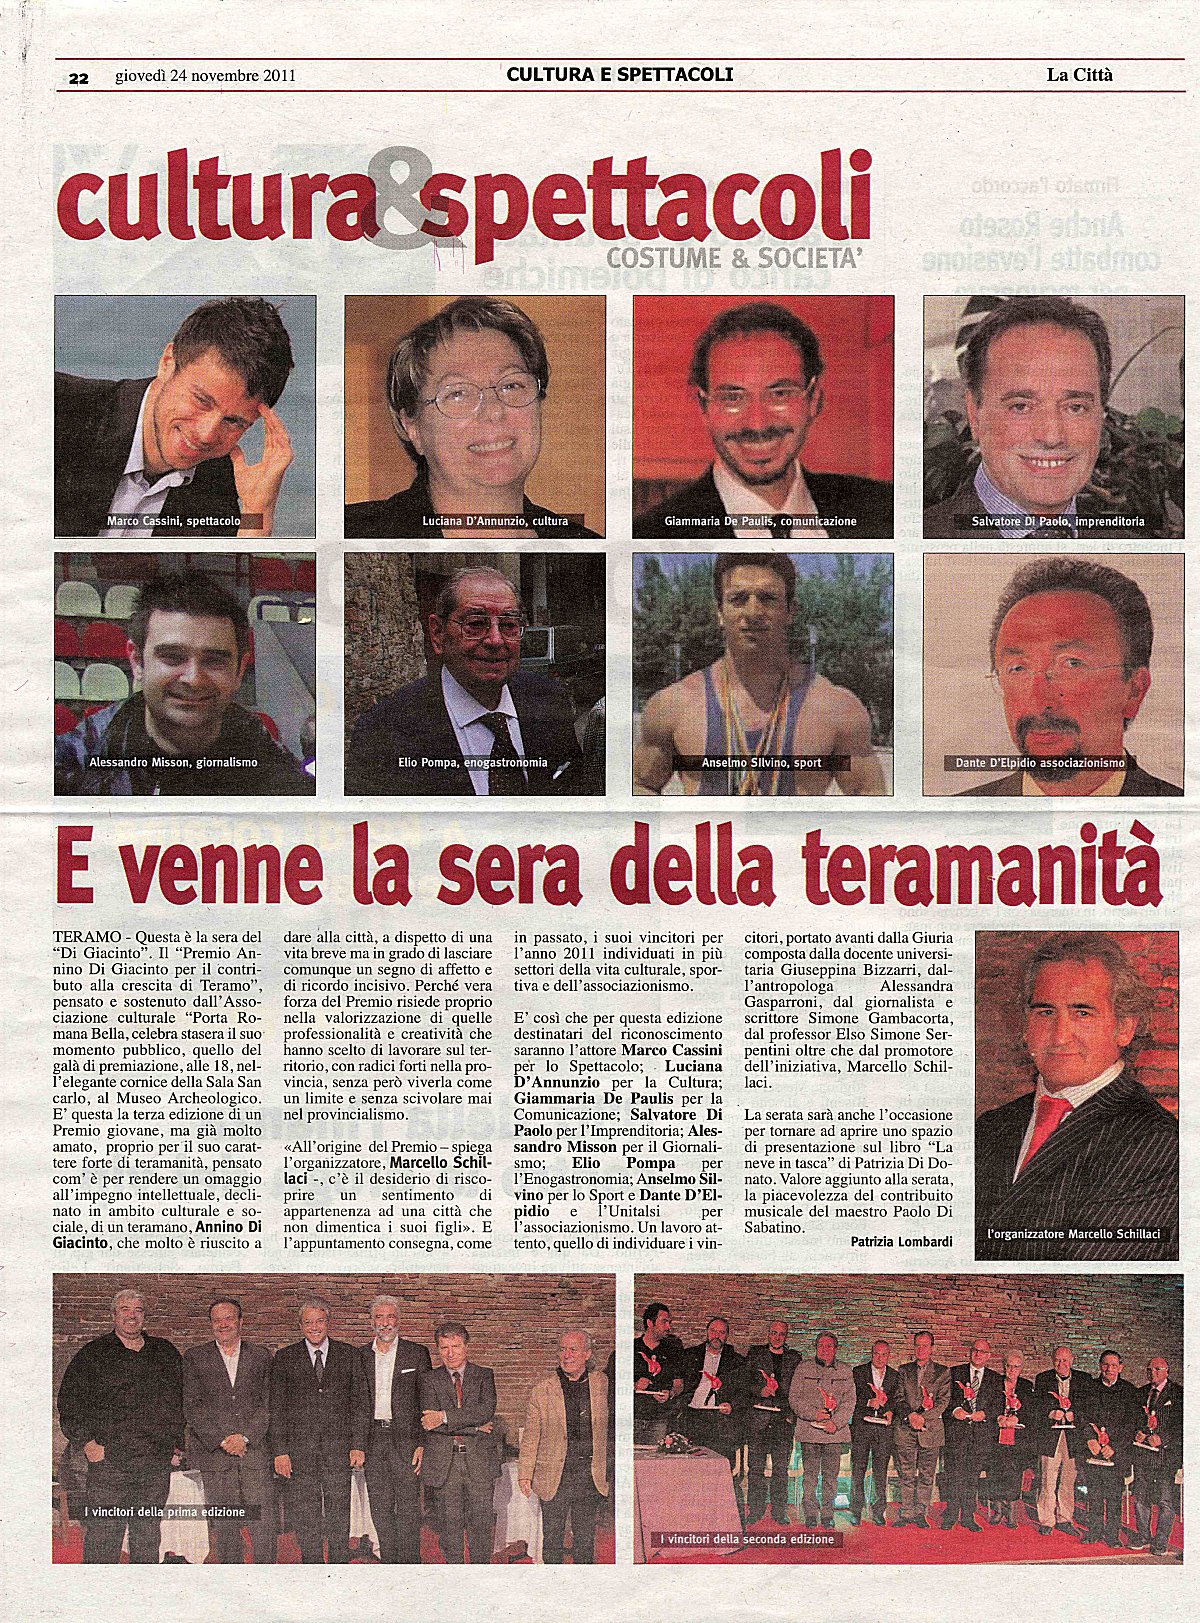 Articolo di Patrizia Lombardi pubblicato in "La Città", giovedì 24 novembre 2011